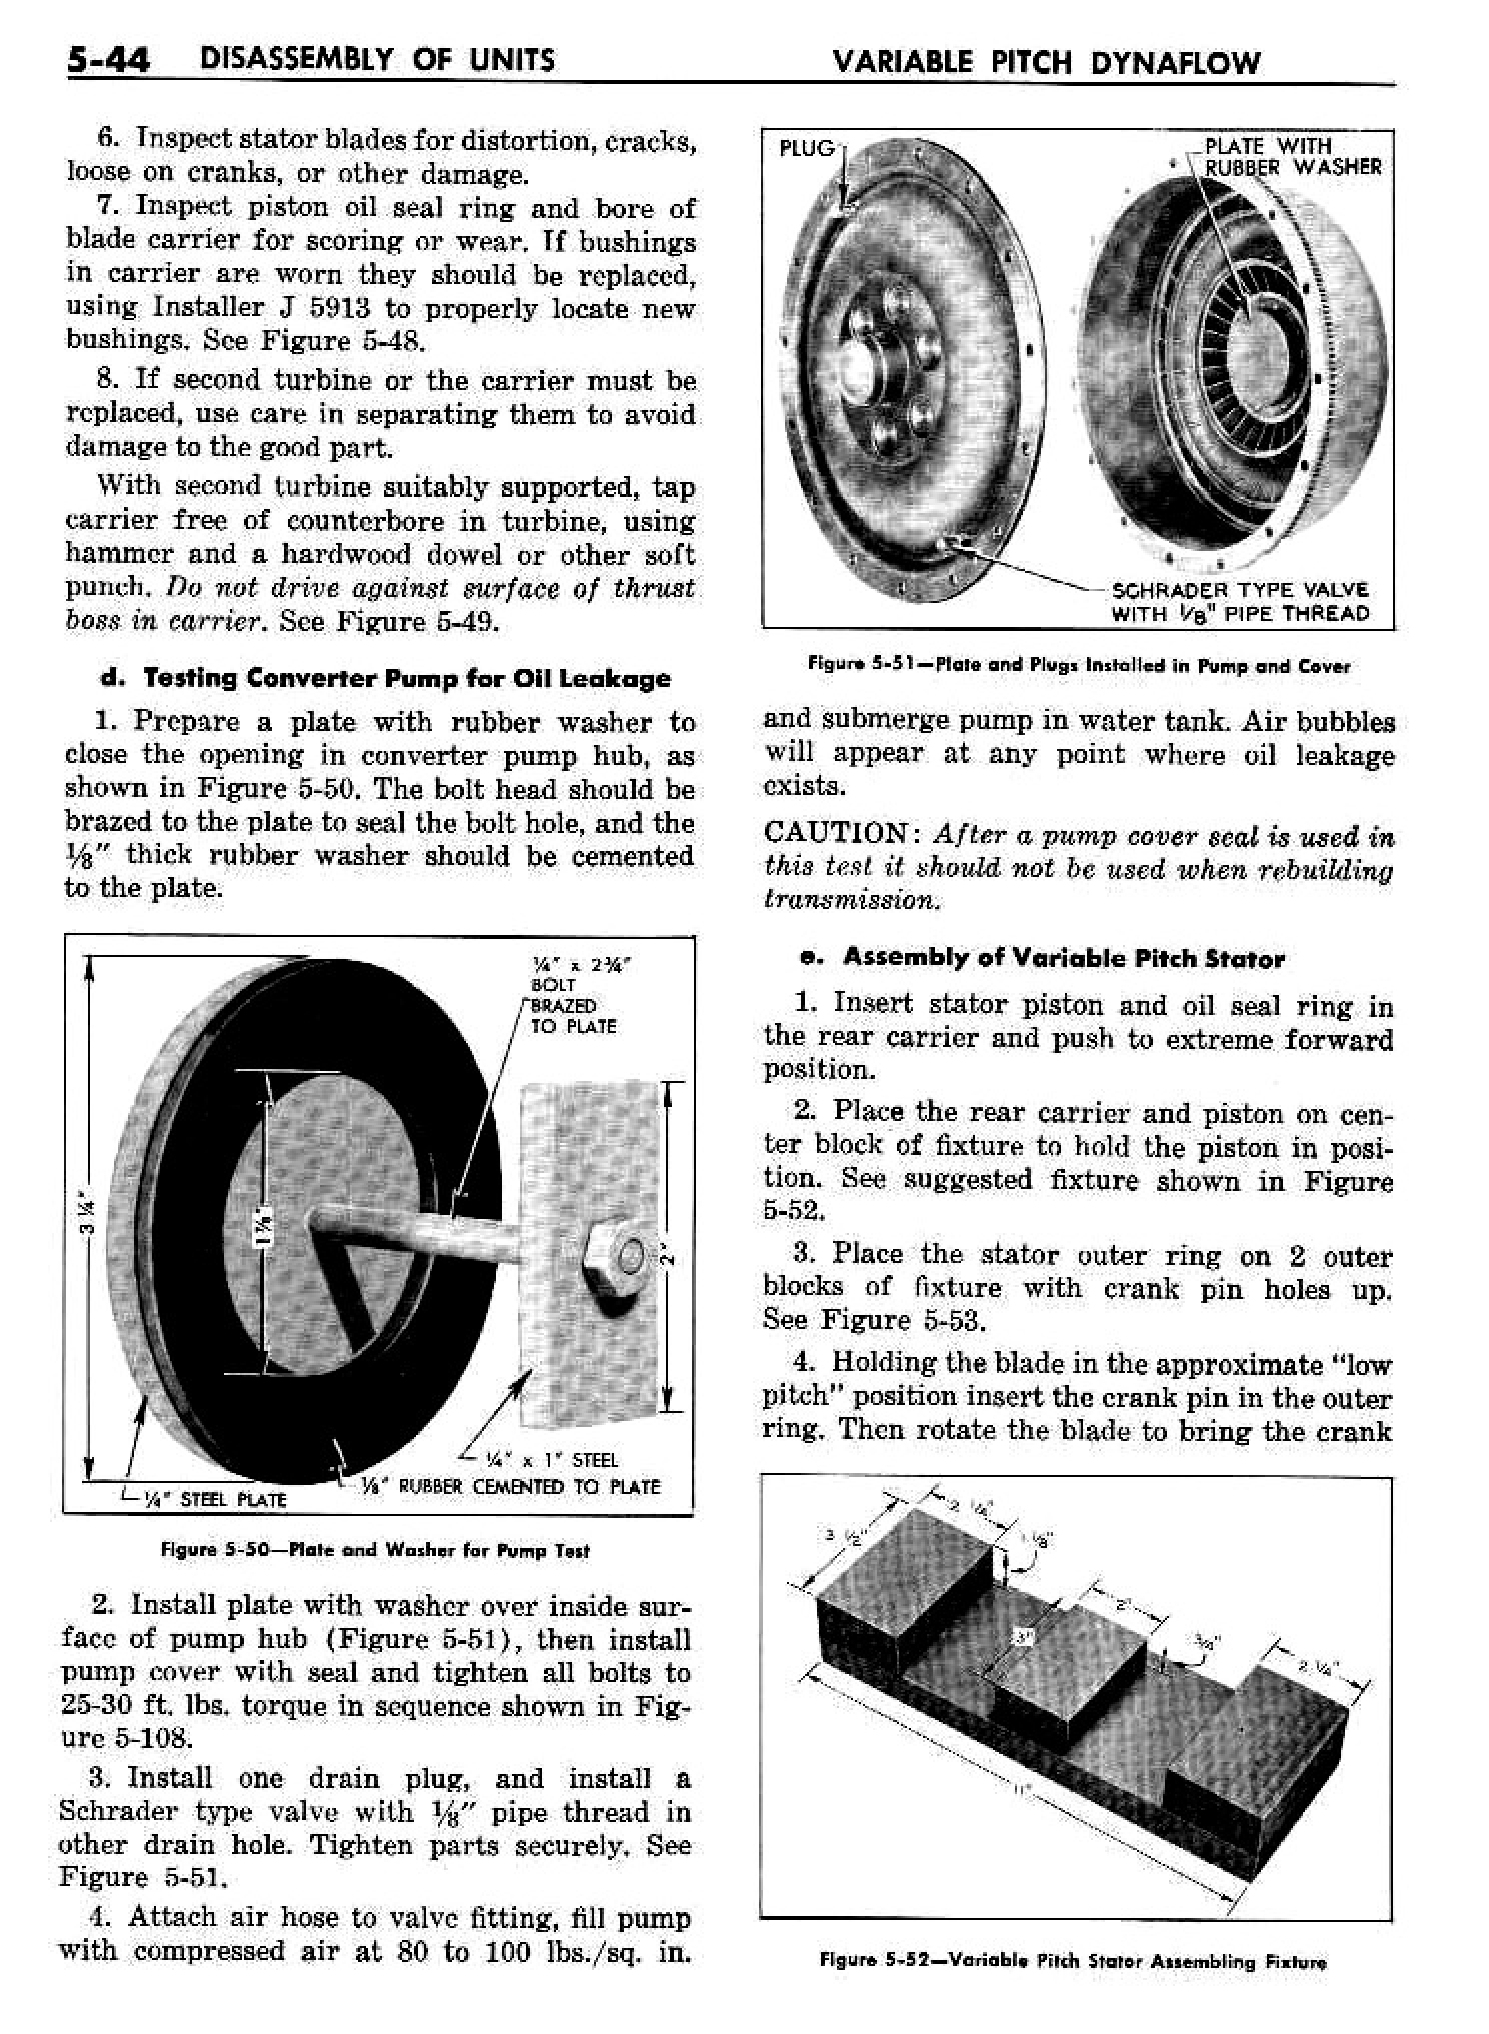 n_06 1958 Buick Shop Manual - Dynaflow_44.jpg